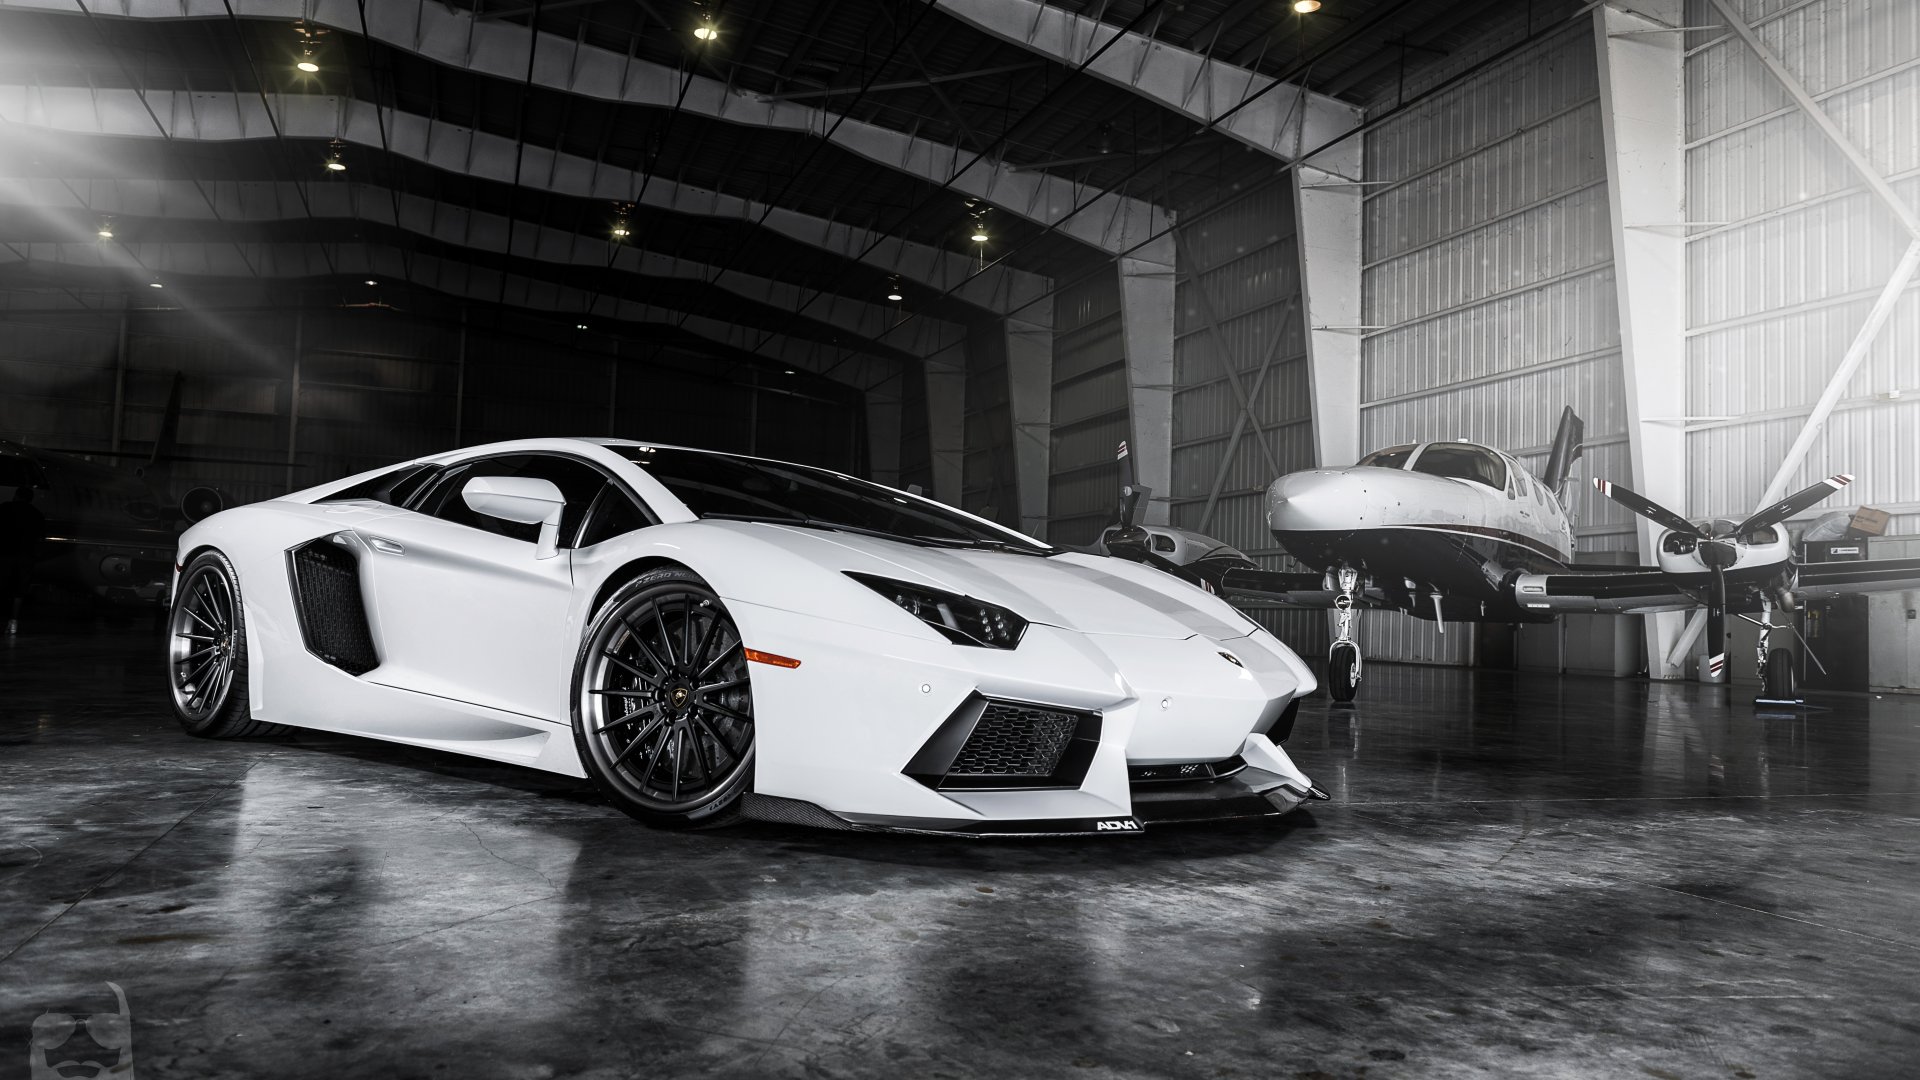 Lamborghini White Wallpapers HD | PixelsTalk.Net